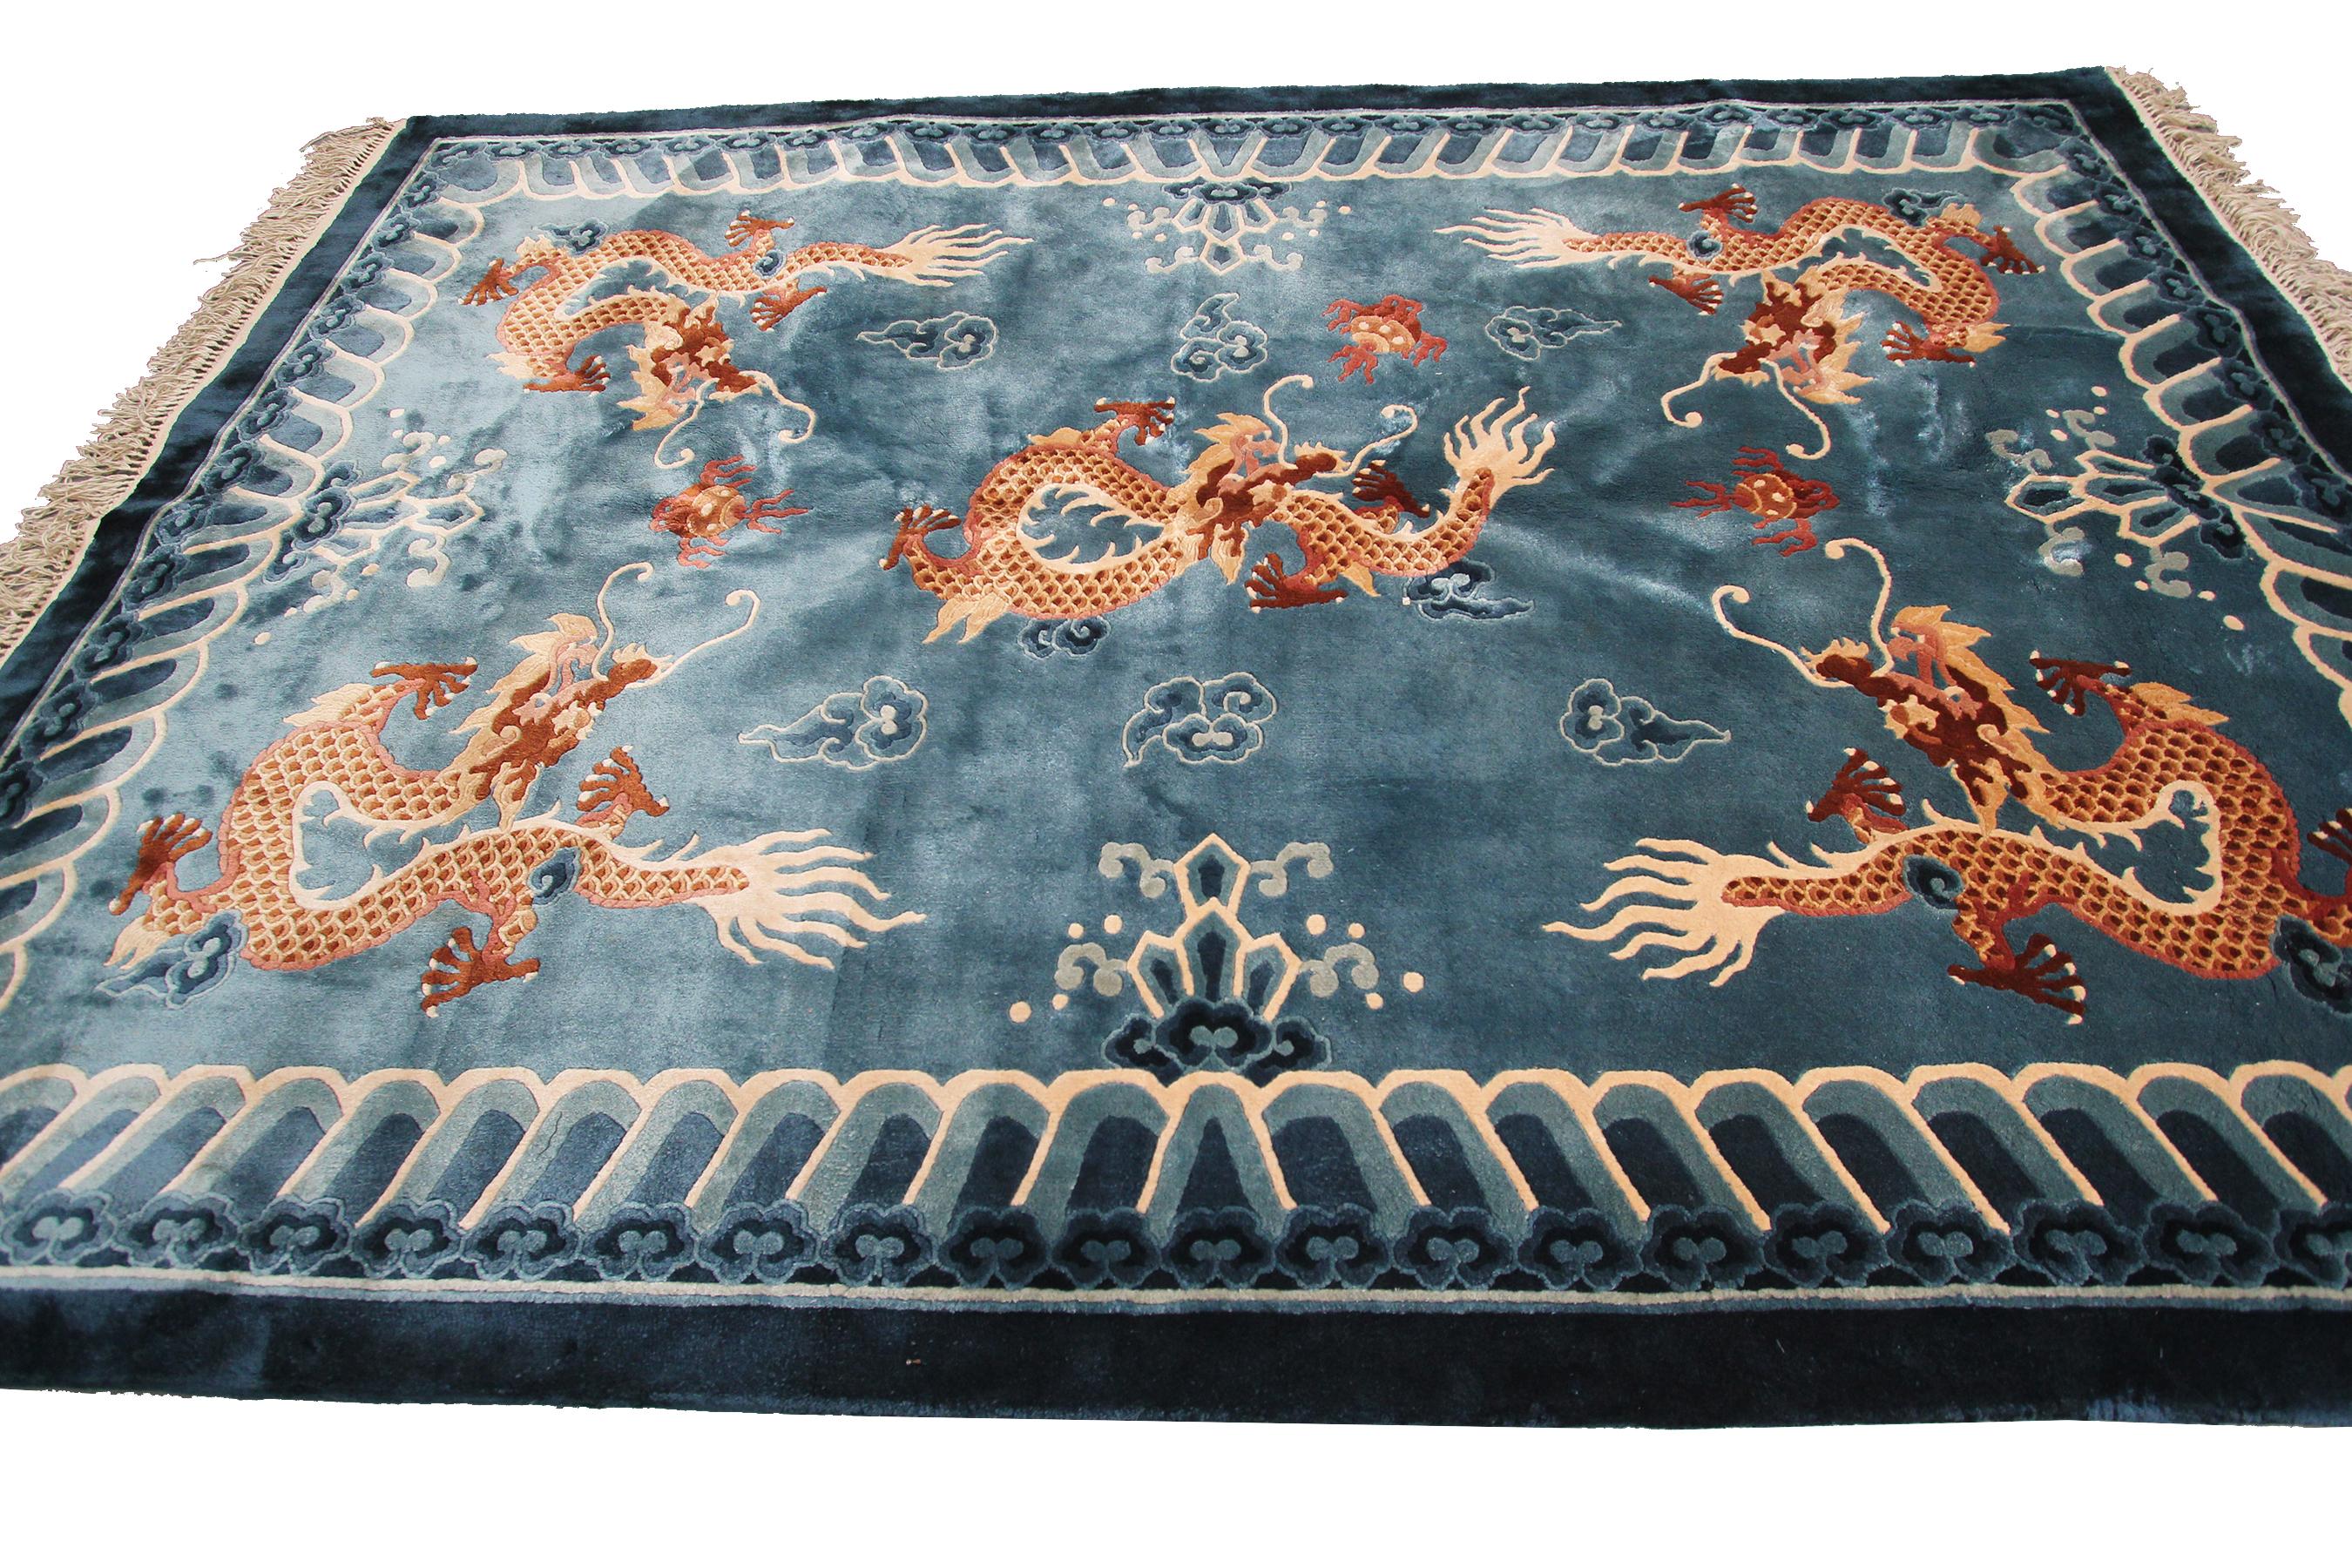 Rare tapis chinois vintage Tapisserie de soie organique fine 5 pattes Dragons 4' x 6'1